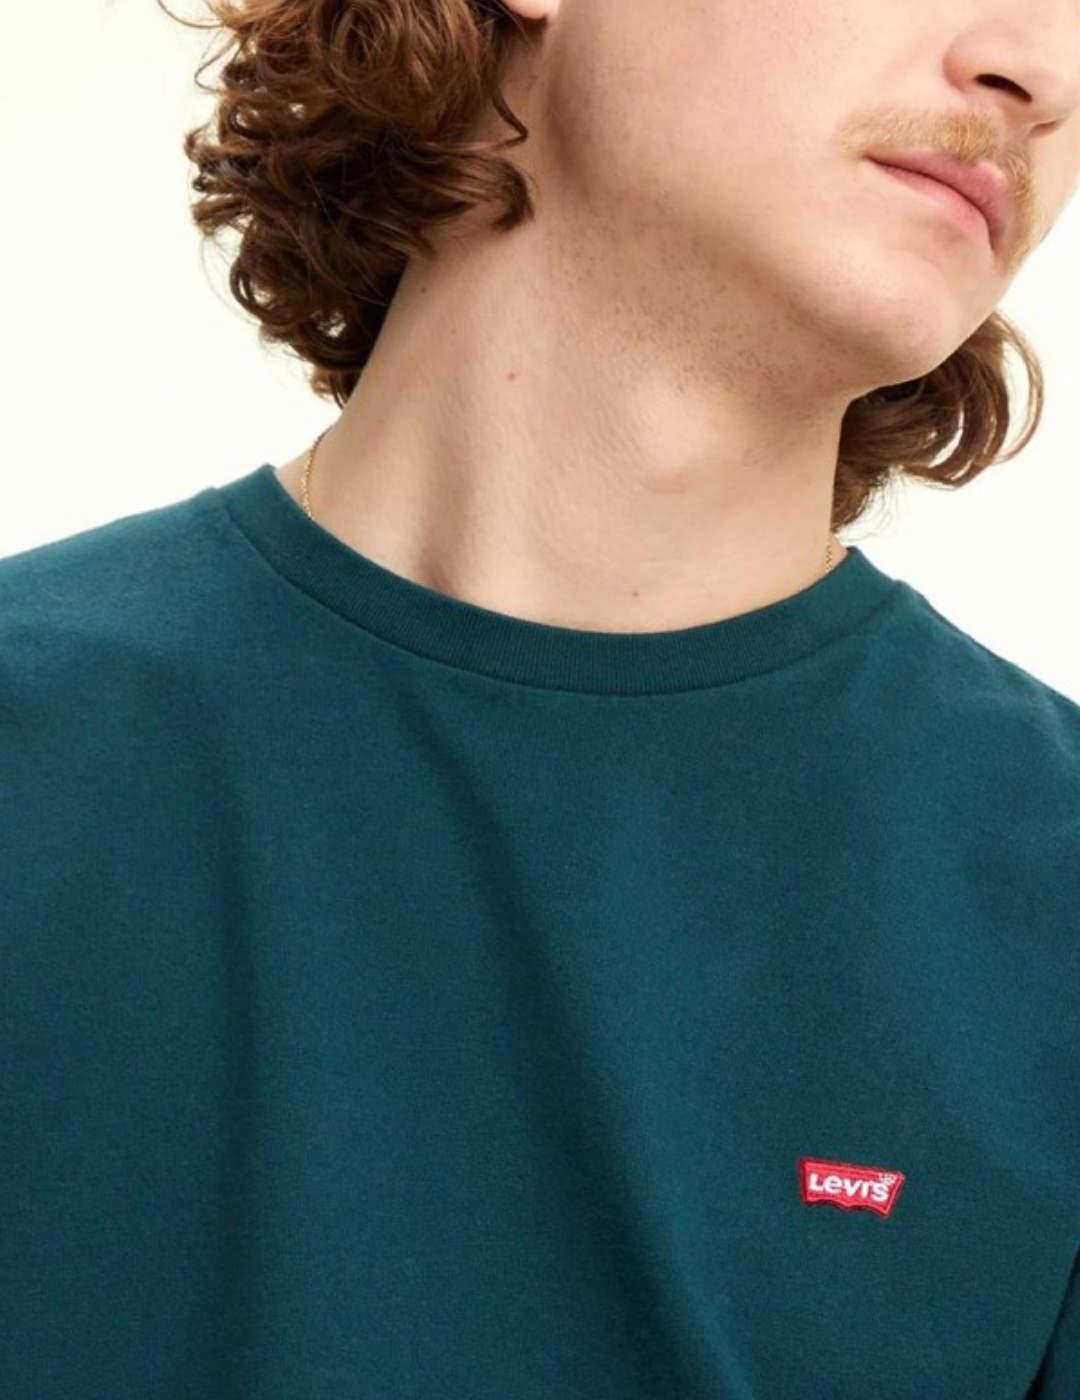 Camiseta Levi's Original Pine para hombre -b